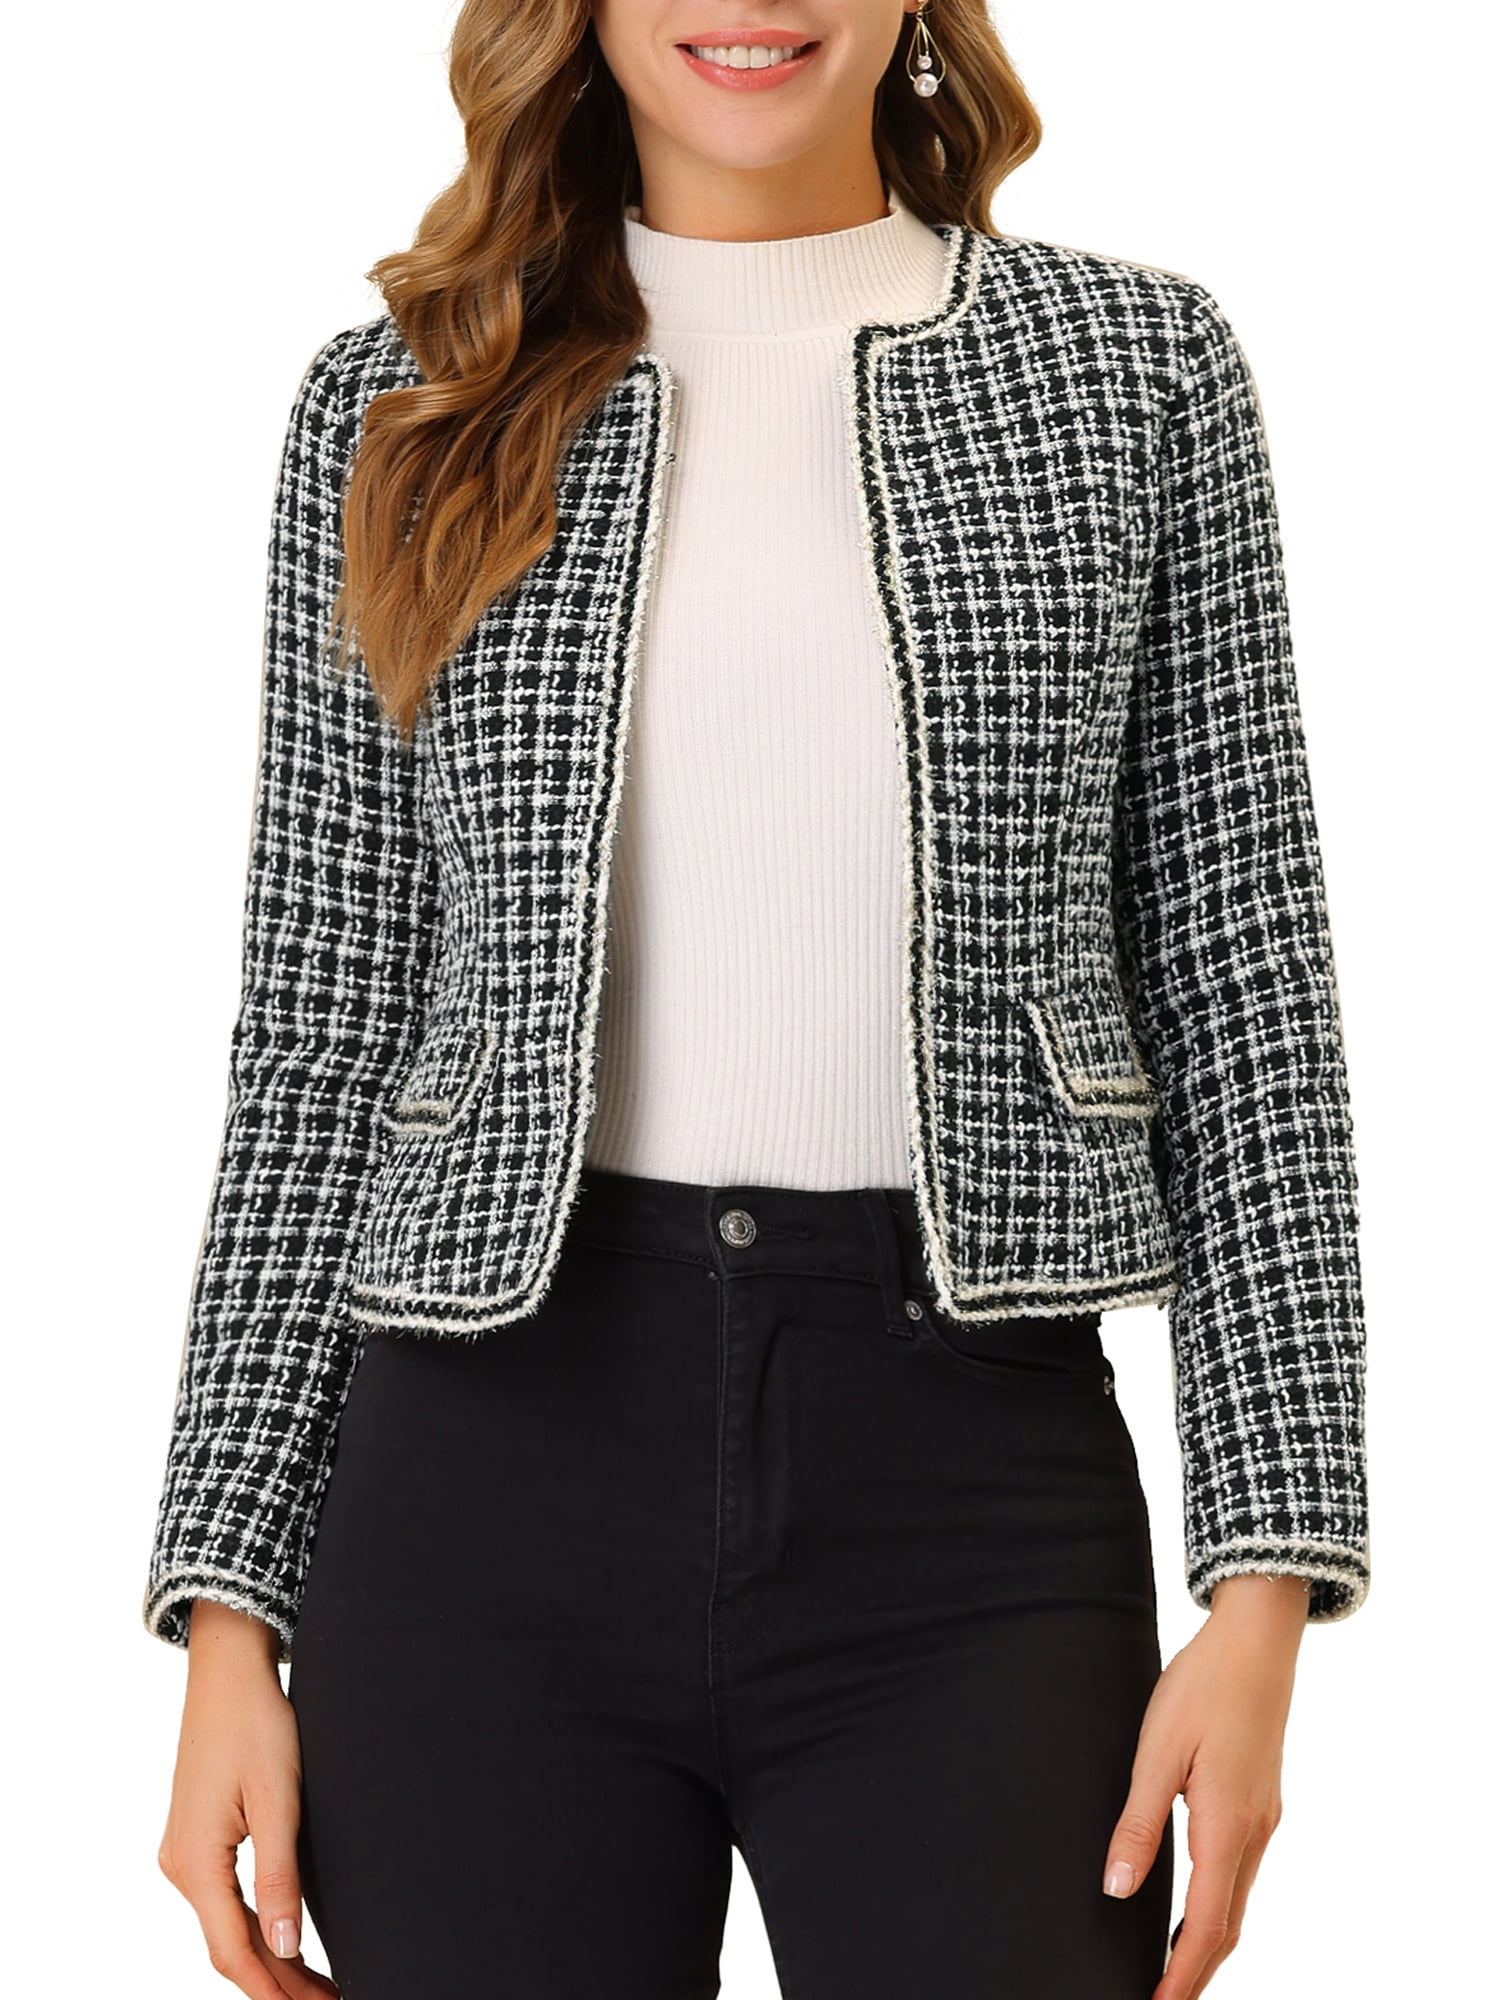 Unique Bargains Women's Plaid Tweed Blazer Long Sleeve Open Front Work  Jacket L Black